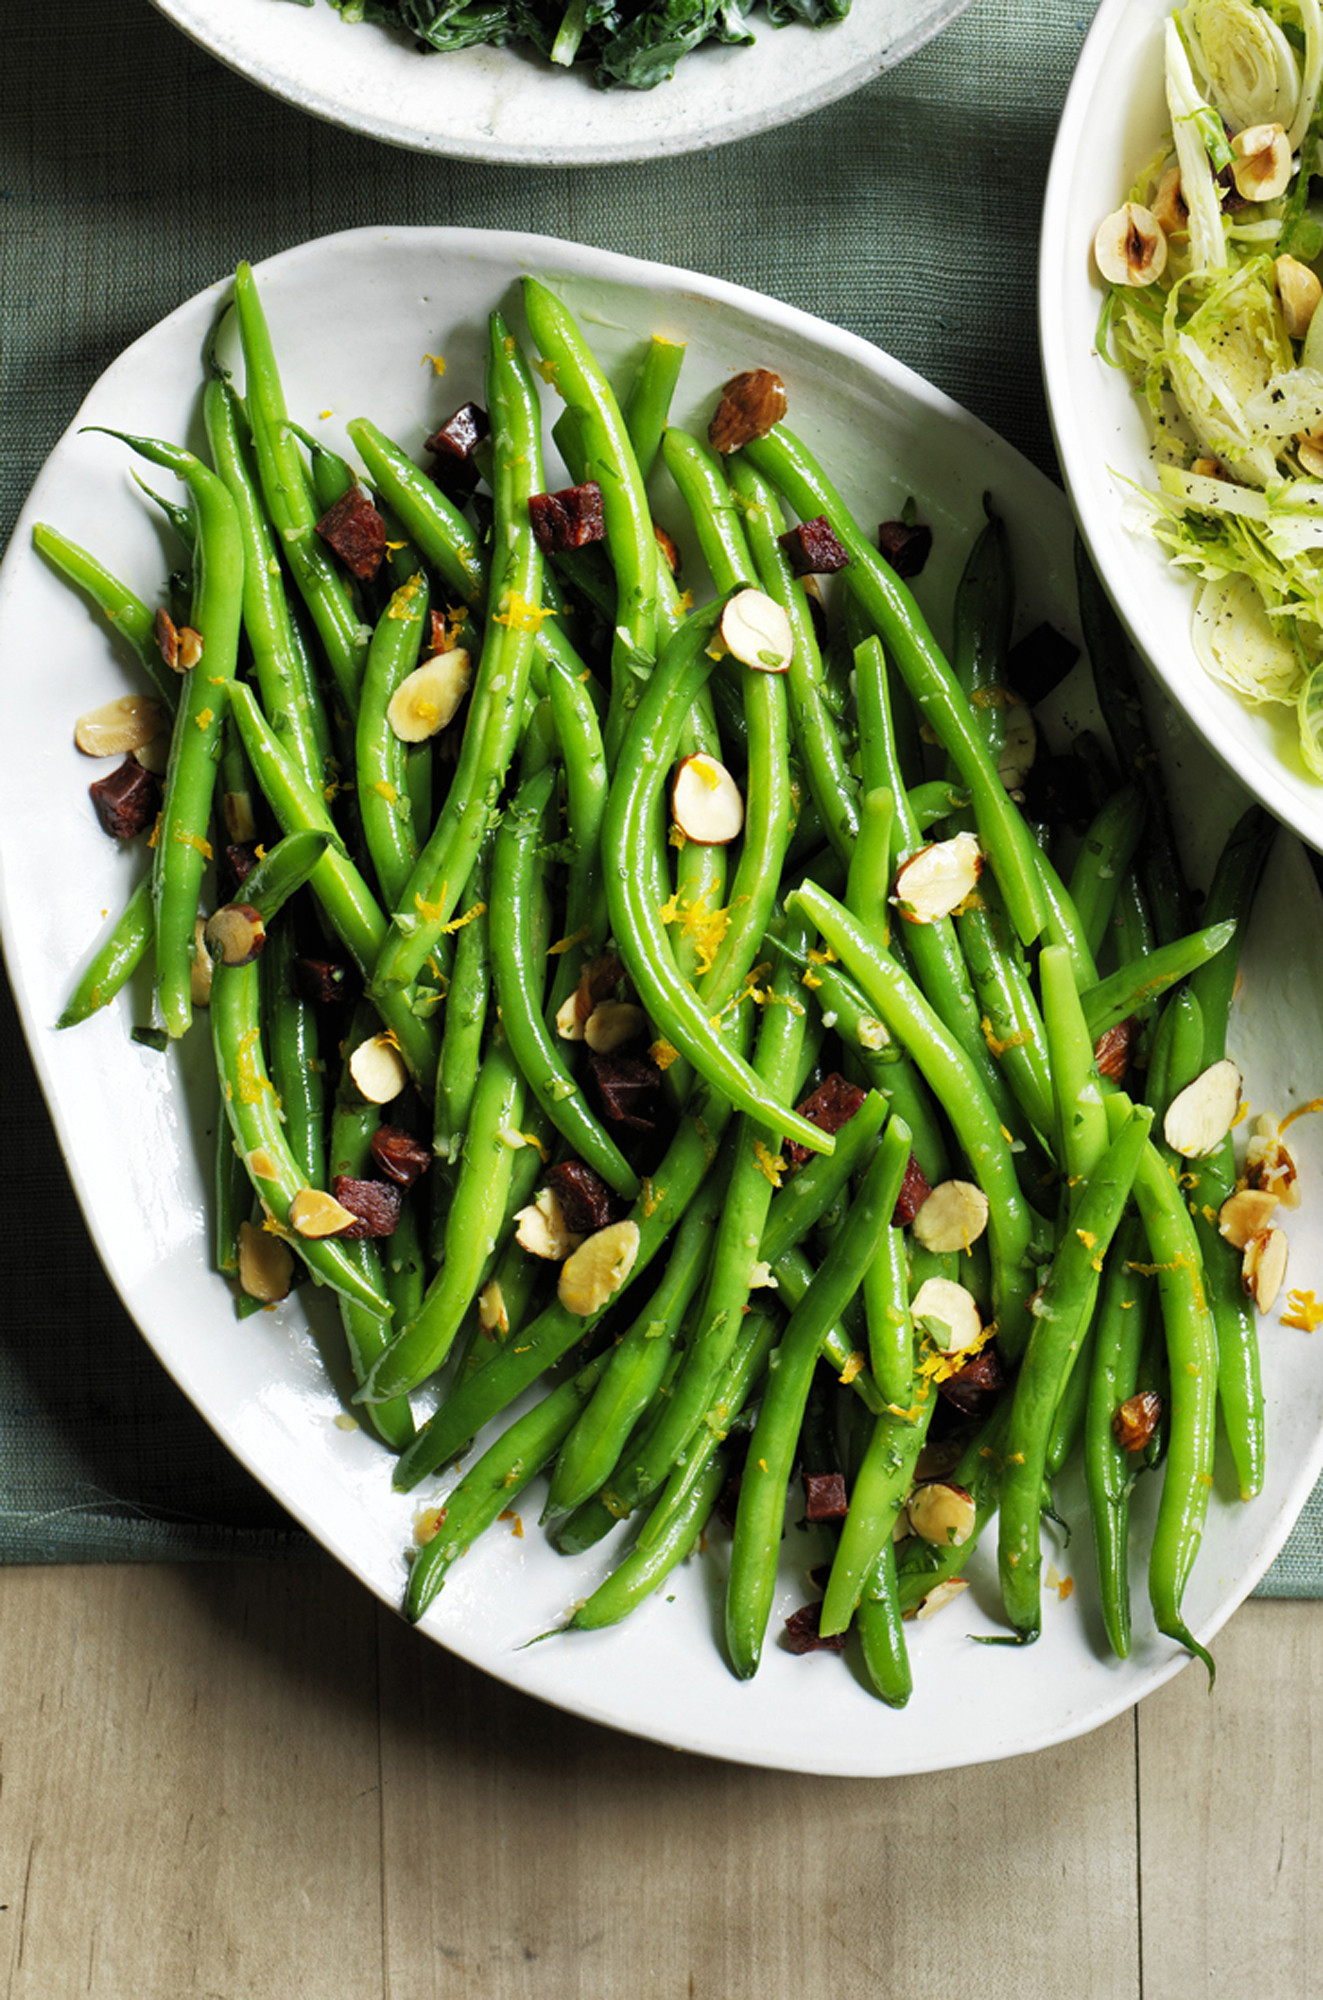 Best Green Bean Recipe For Thanksgiving
 16 Best Green Bean Recipes How to Cook Green Beans